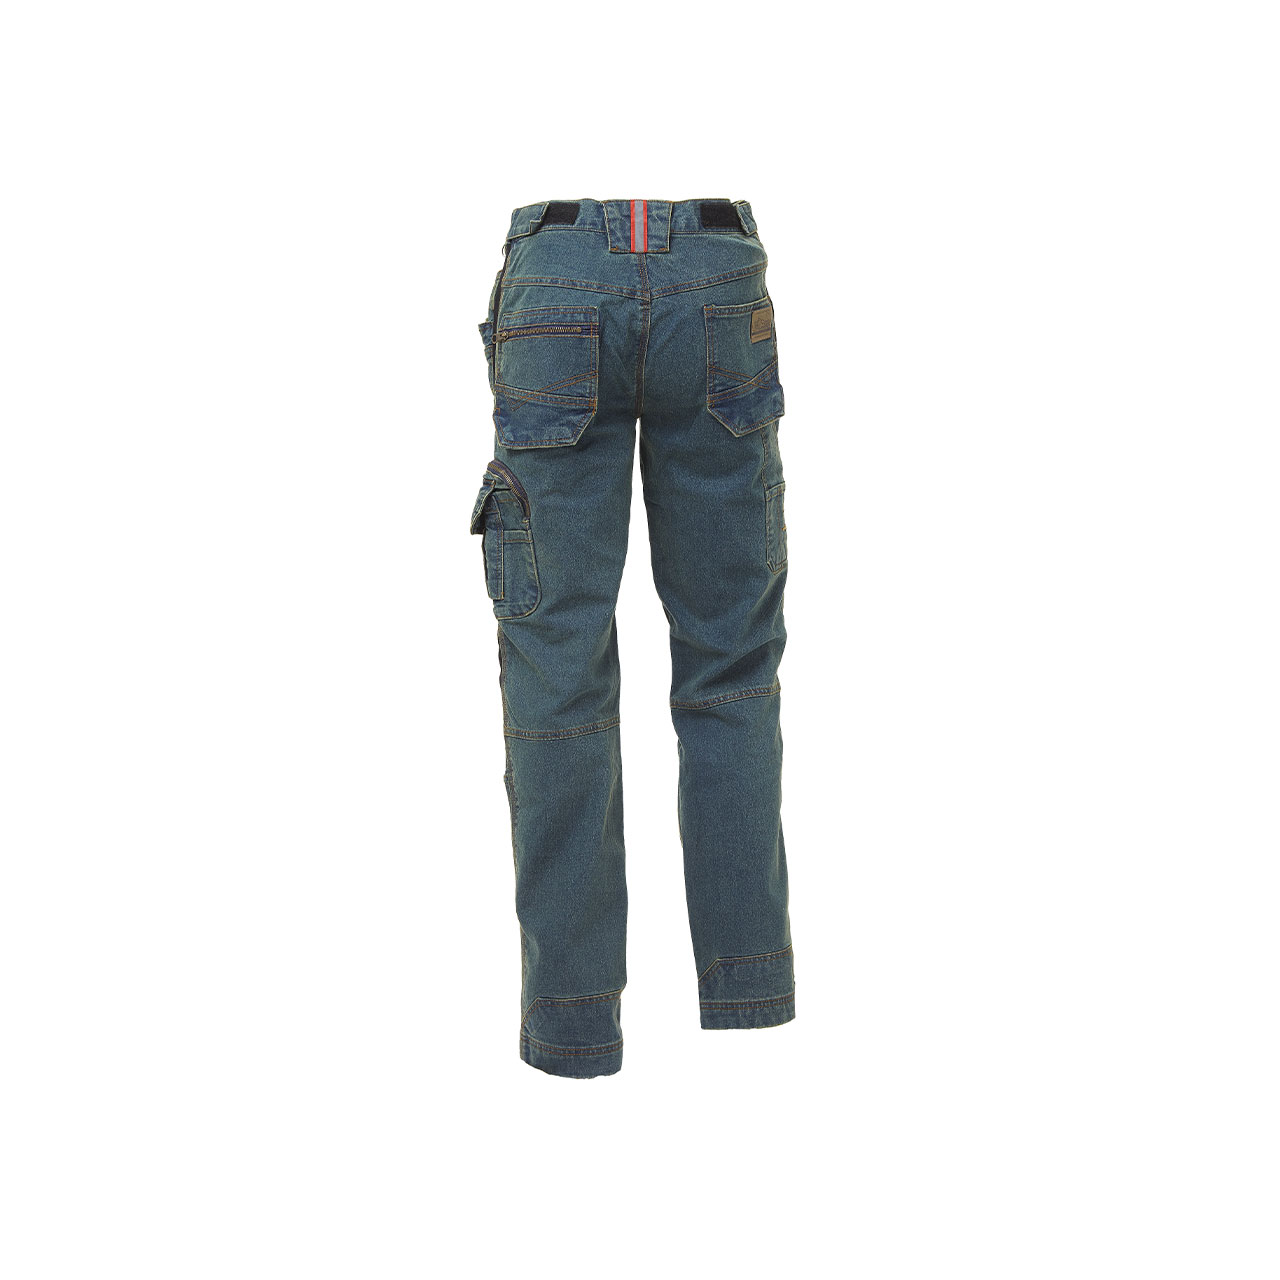 pantalone da lavoro upower modello traffic colore rust jeans